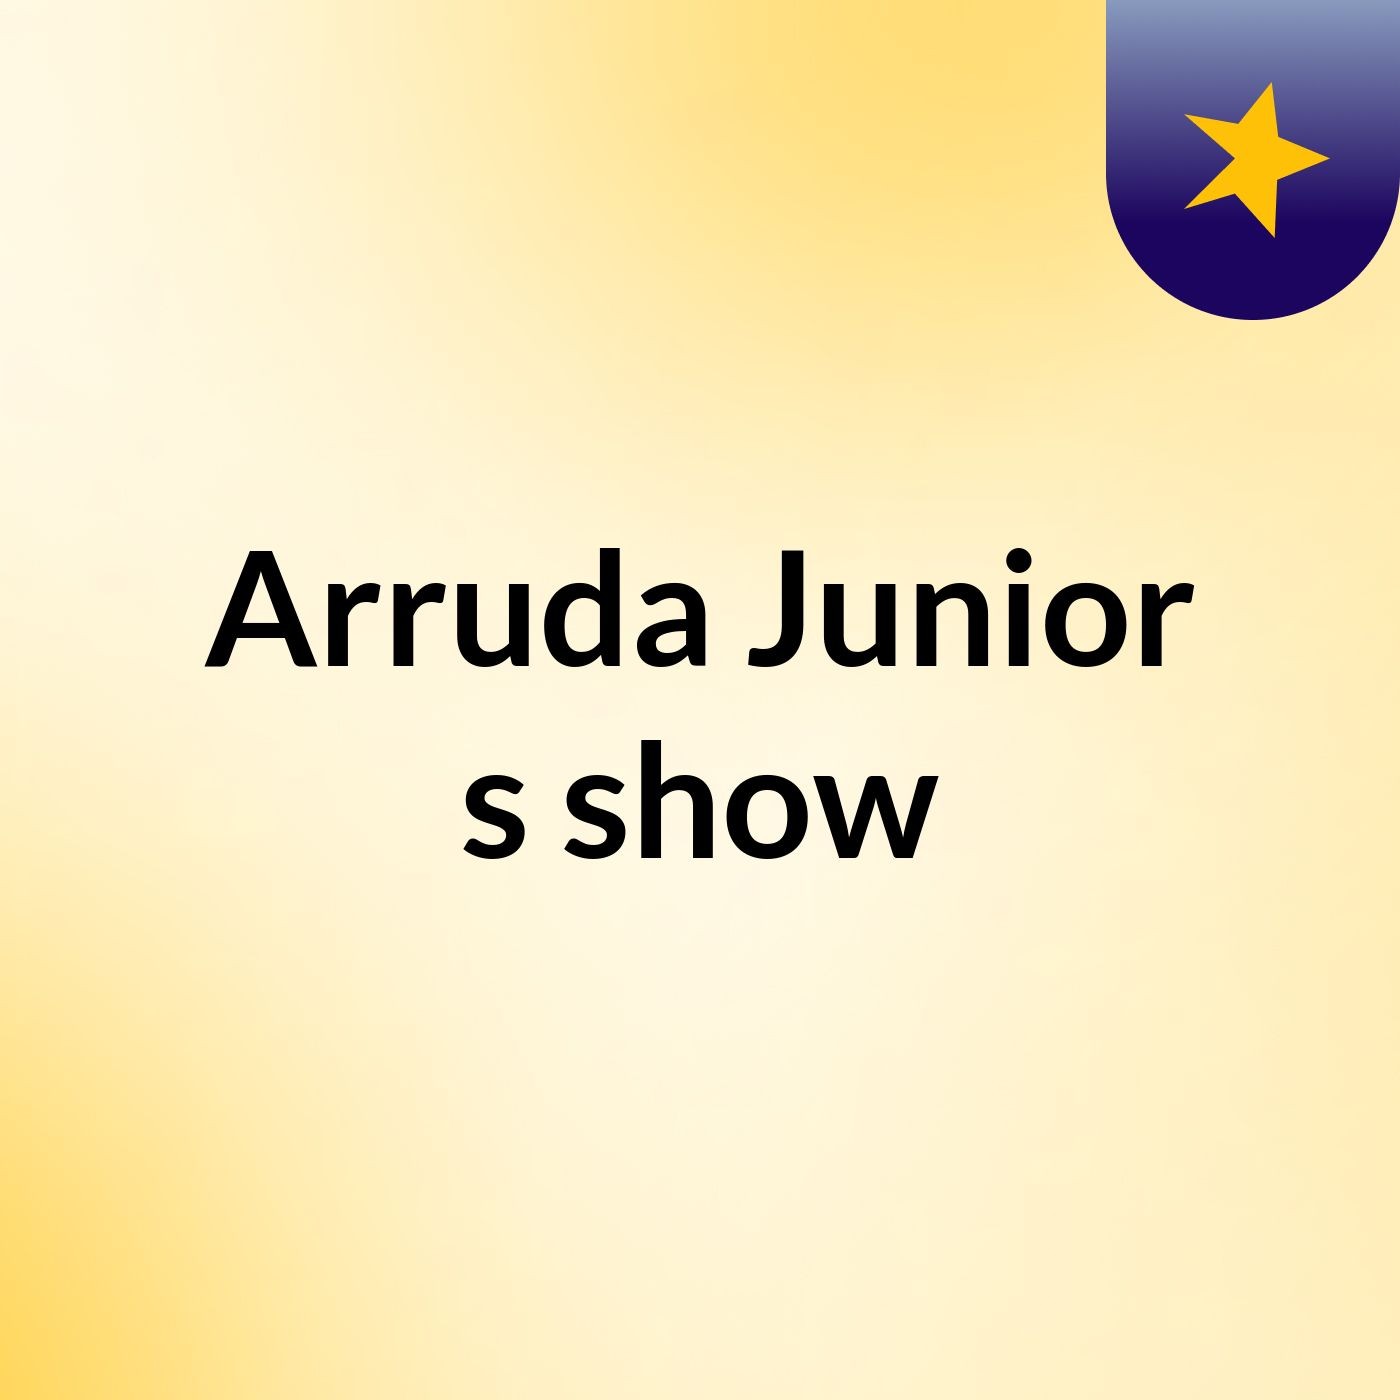 Arruda Junior's show